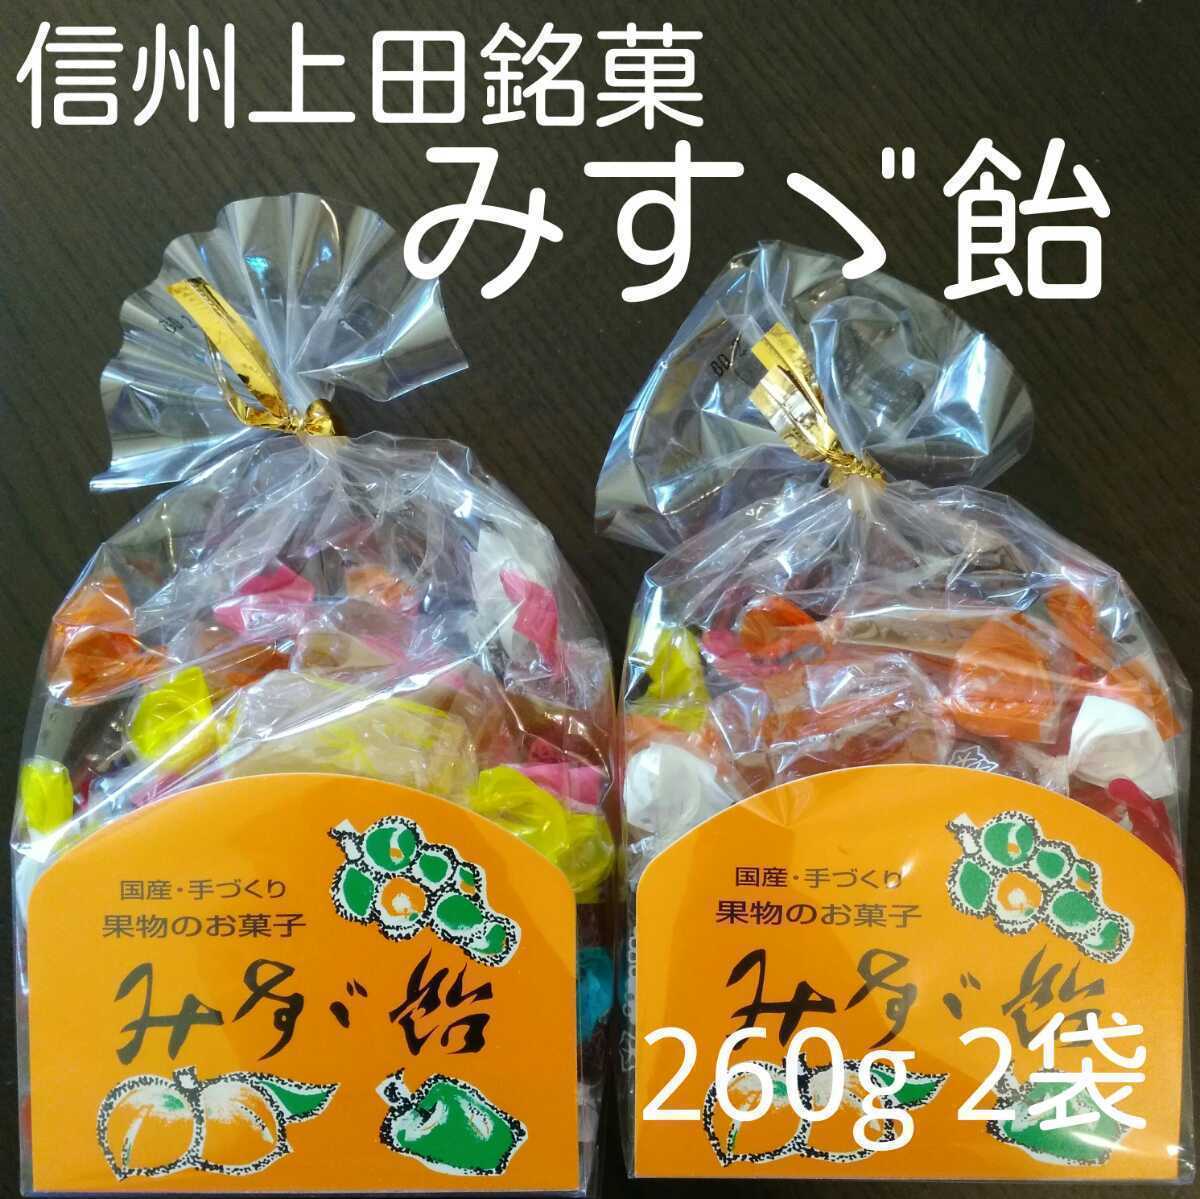 信州上田銘菓飯島商店 みすゞ飴260g 2袋セットみすず飴の画像1